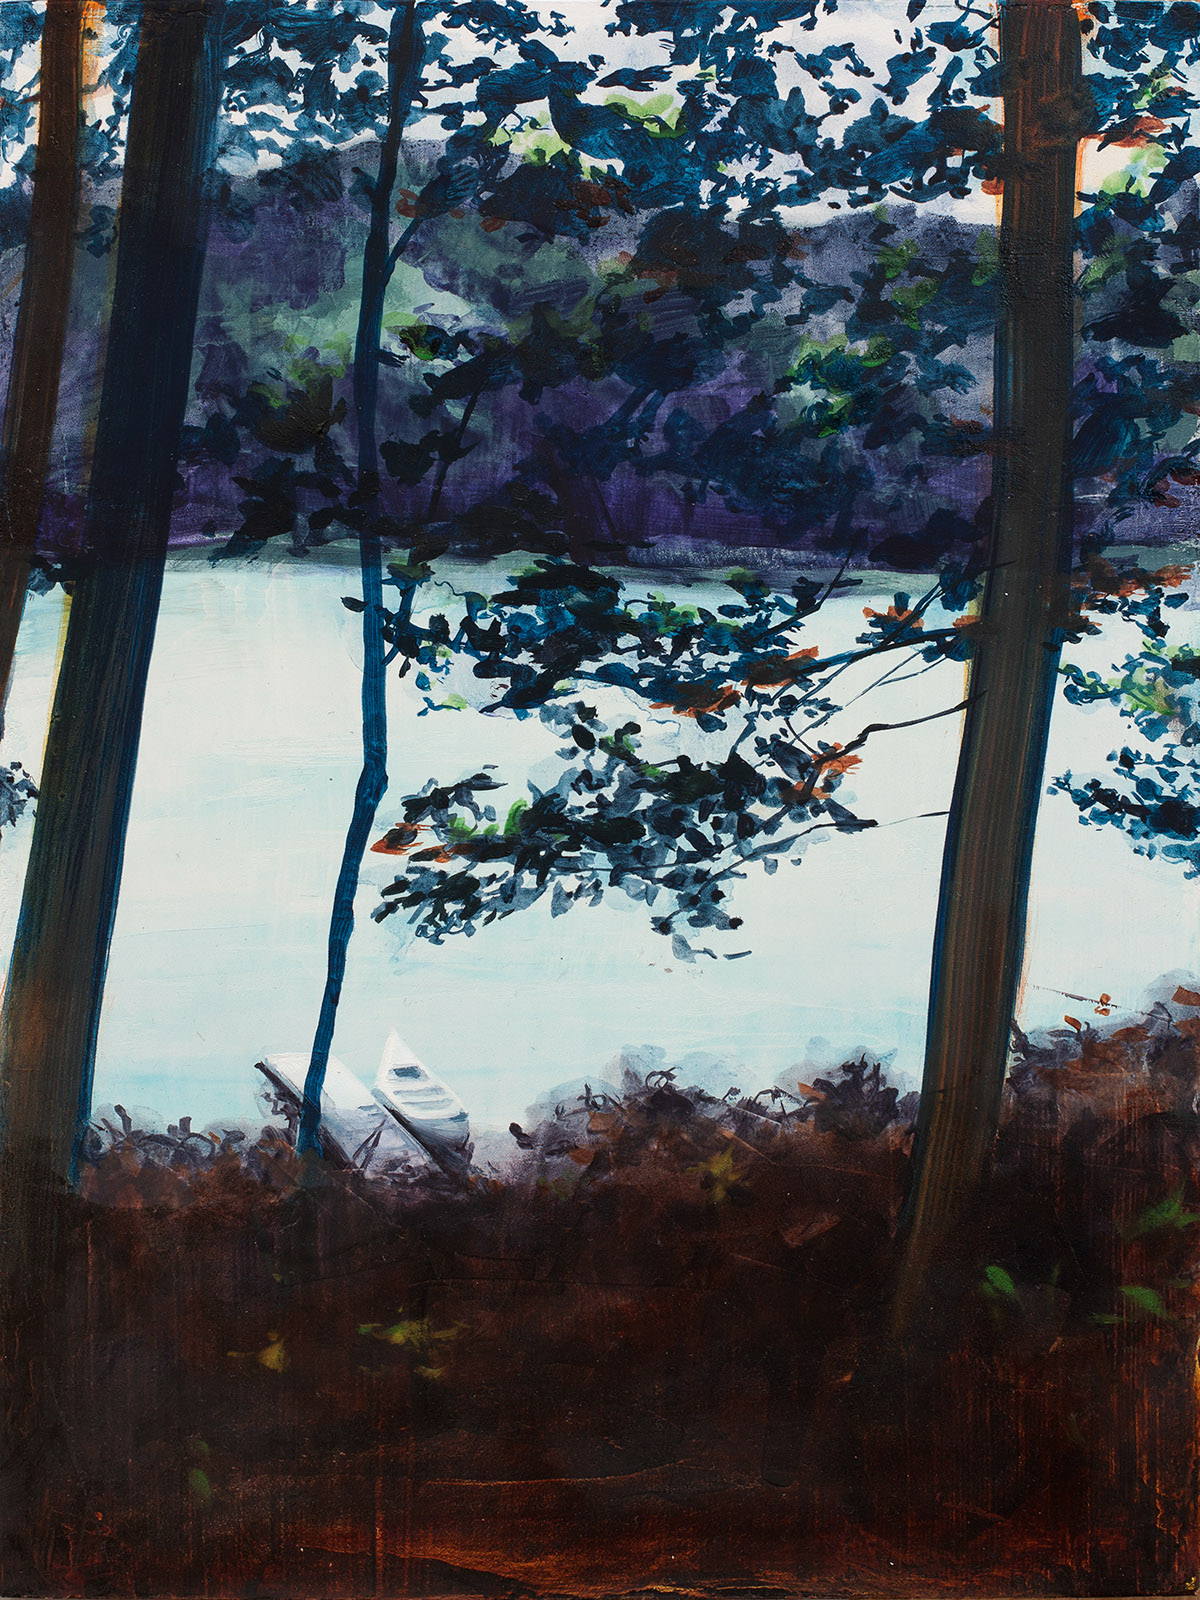 Oil on wood landscapes